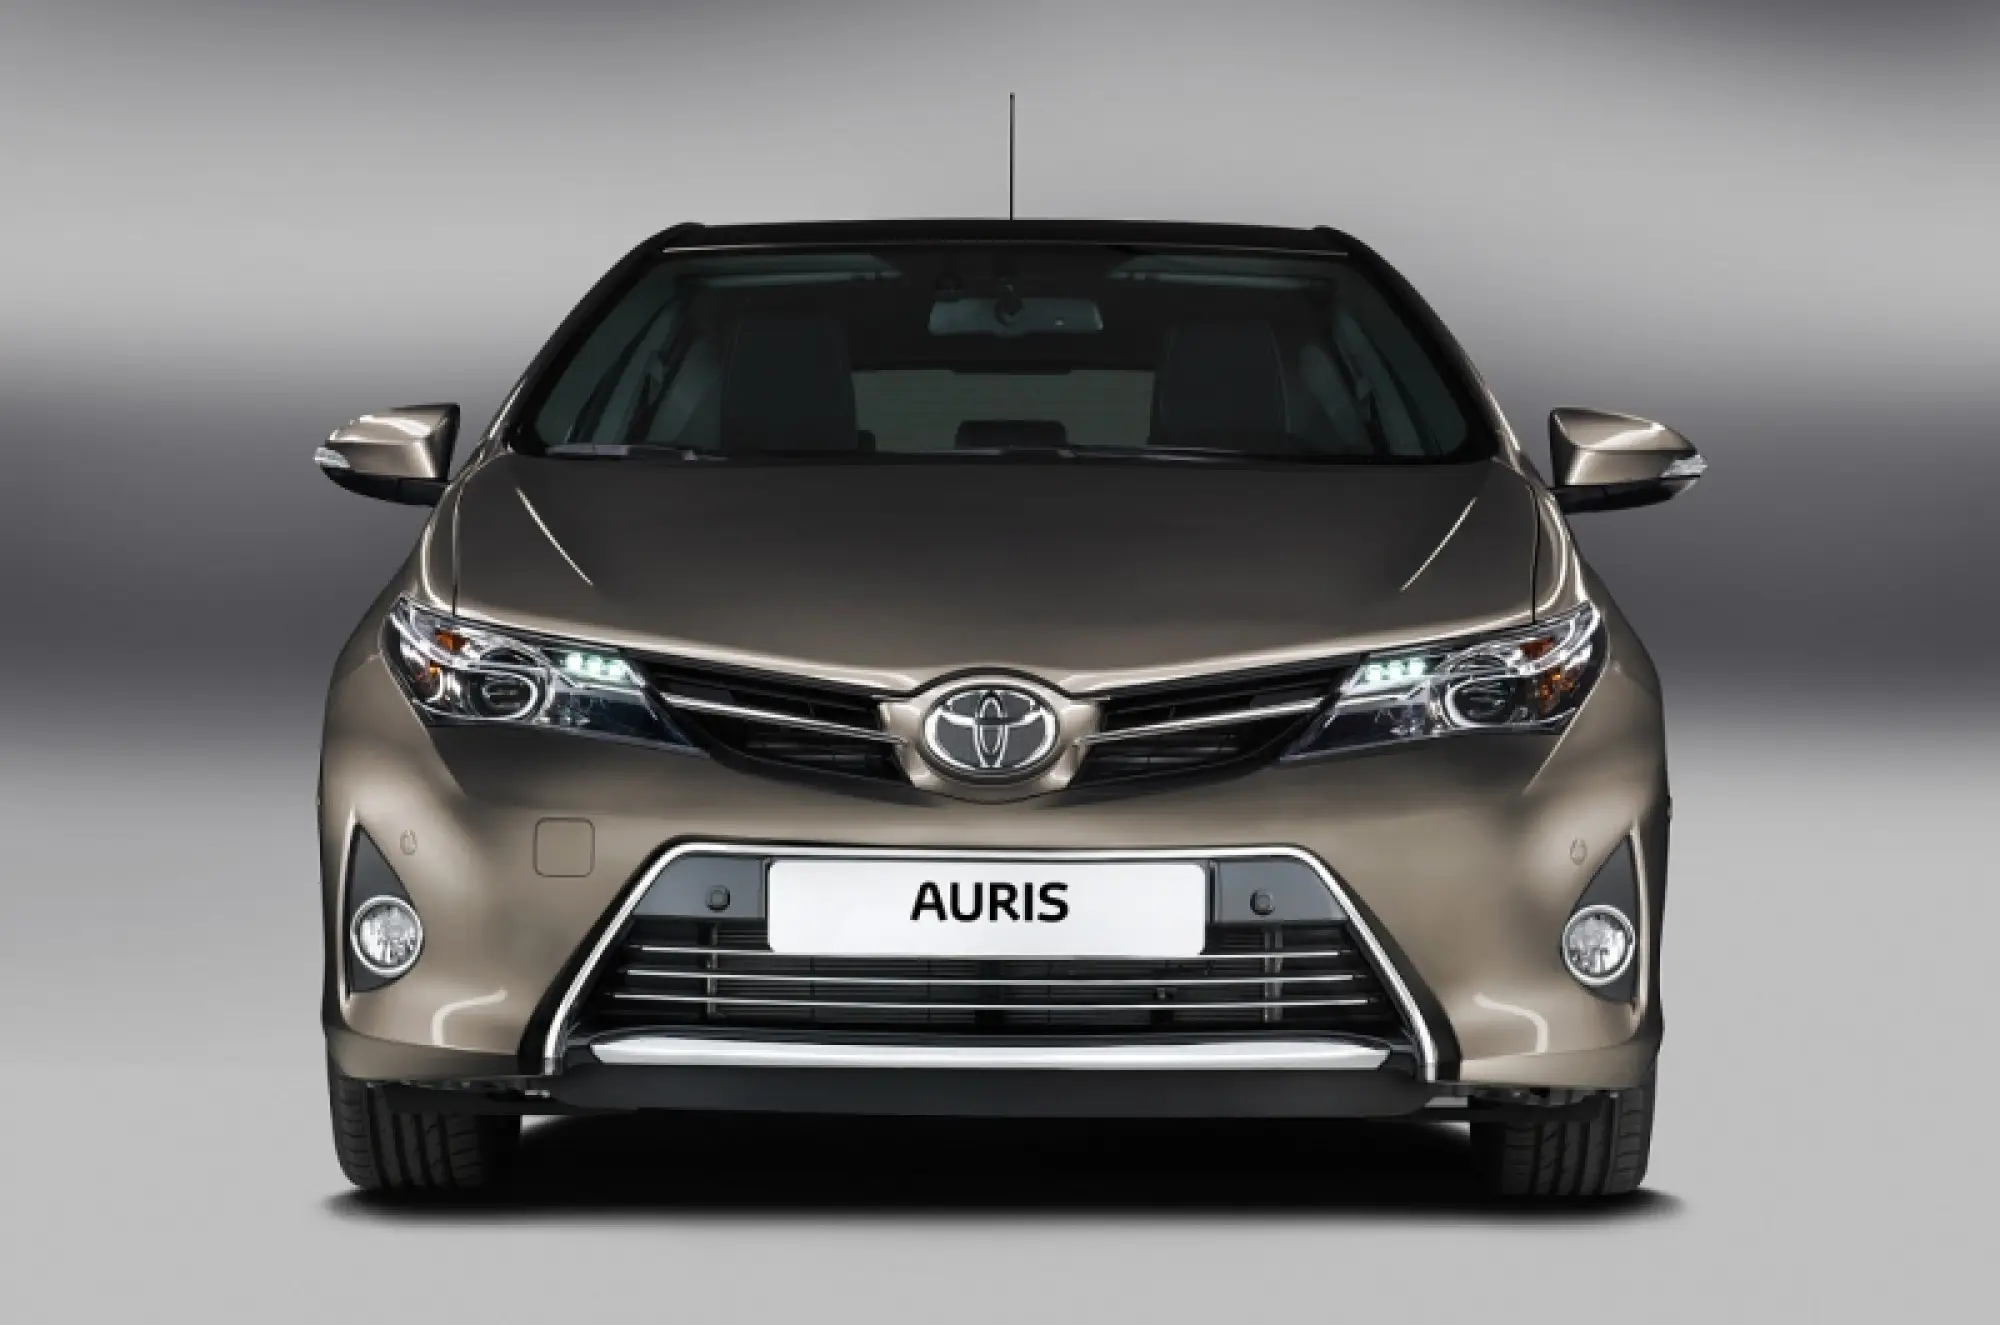 Toyota Auris 2013 foto ufficiali - 1